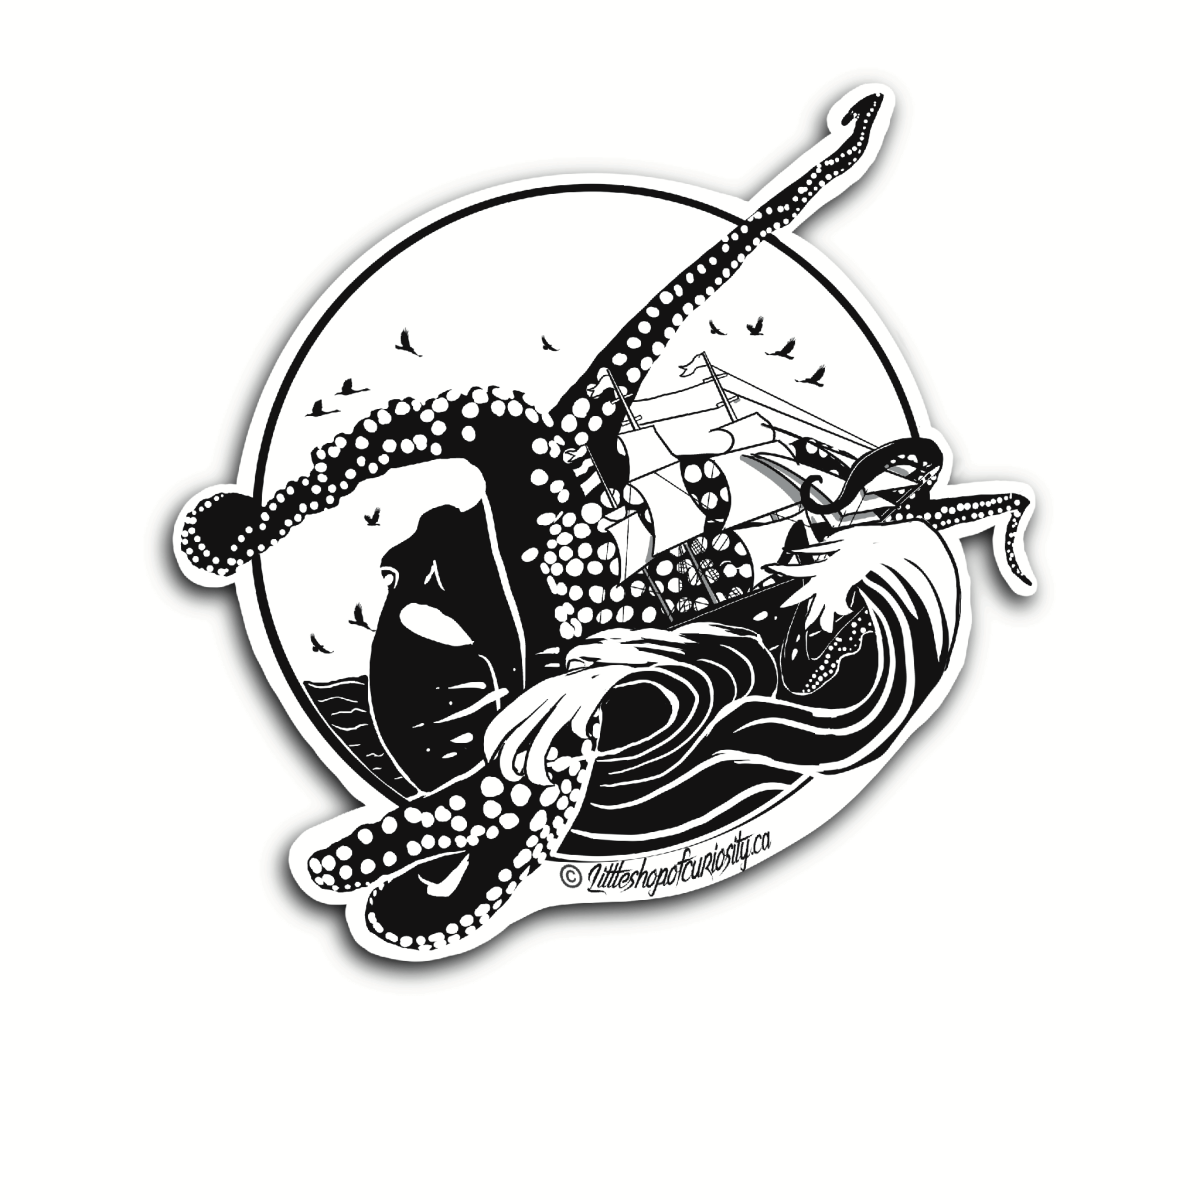 Kraken Sticker - Black & White Sticker - Little Shop of Curiosity